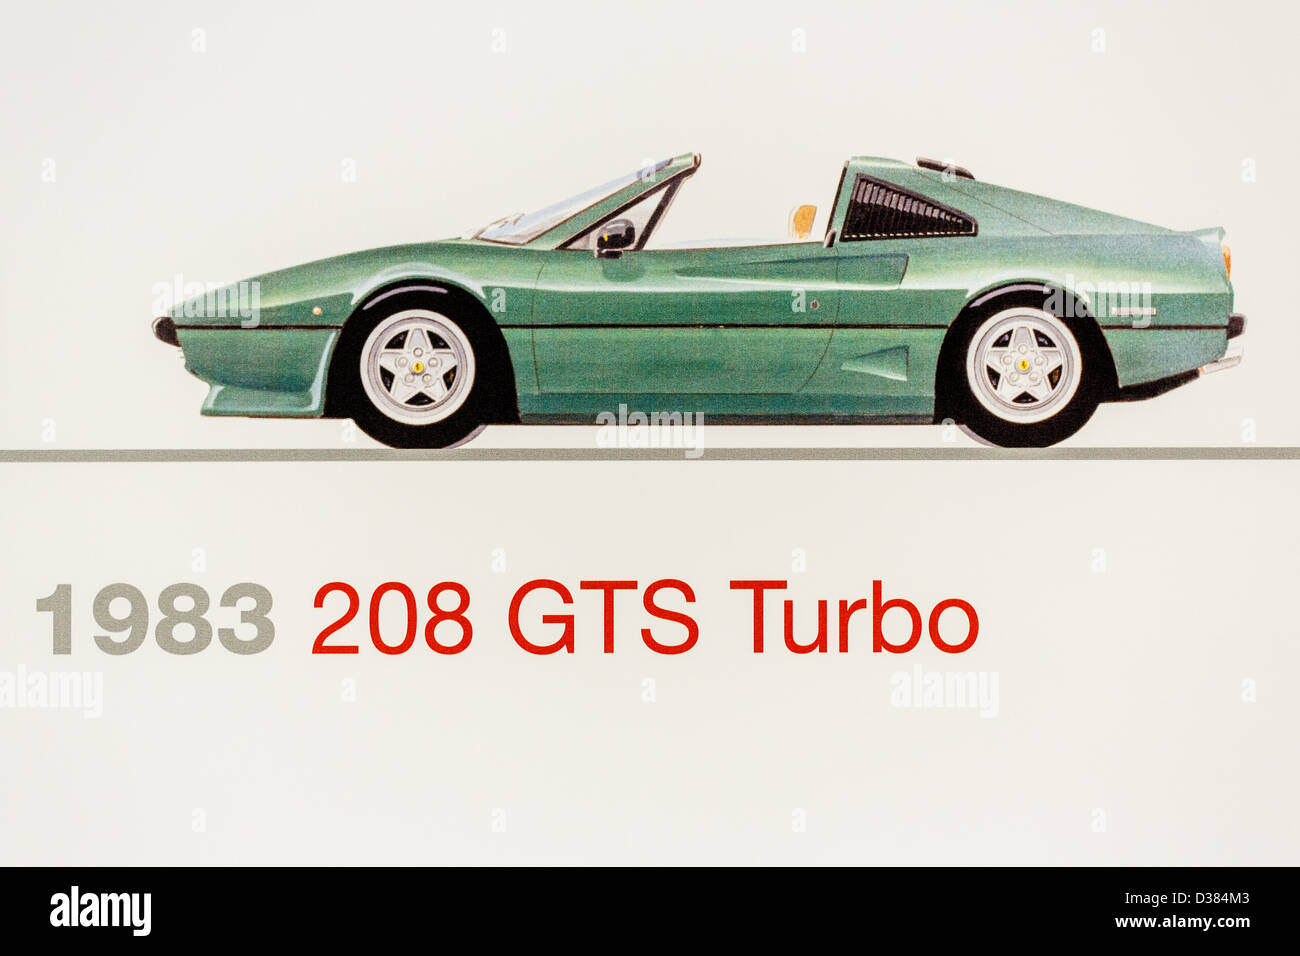 Graphic representation of a 1983 Ferrari 208 GTS Turbo, Ferrari Museum, Maranello, Italy Stock Photo